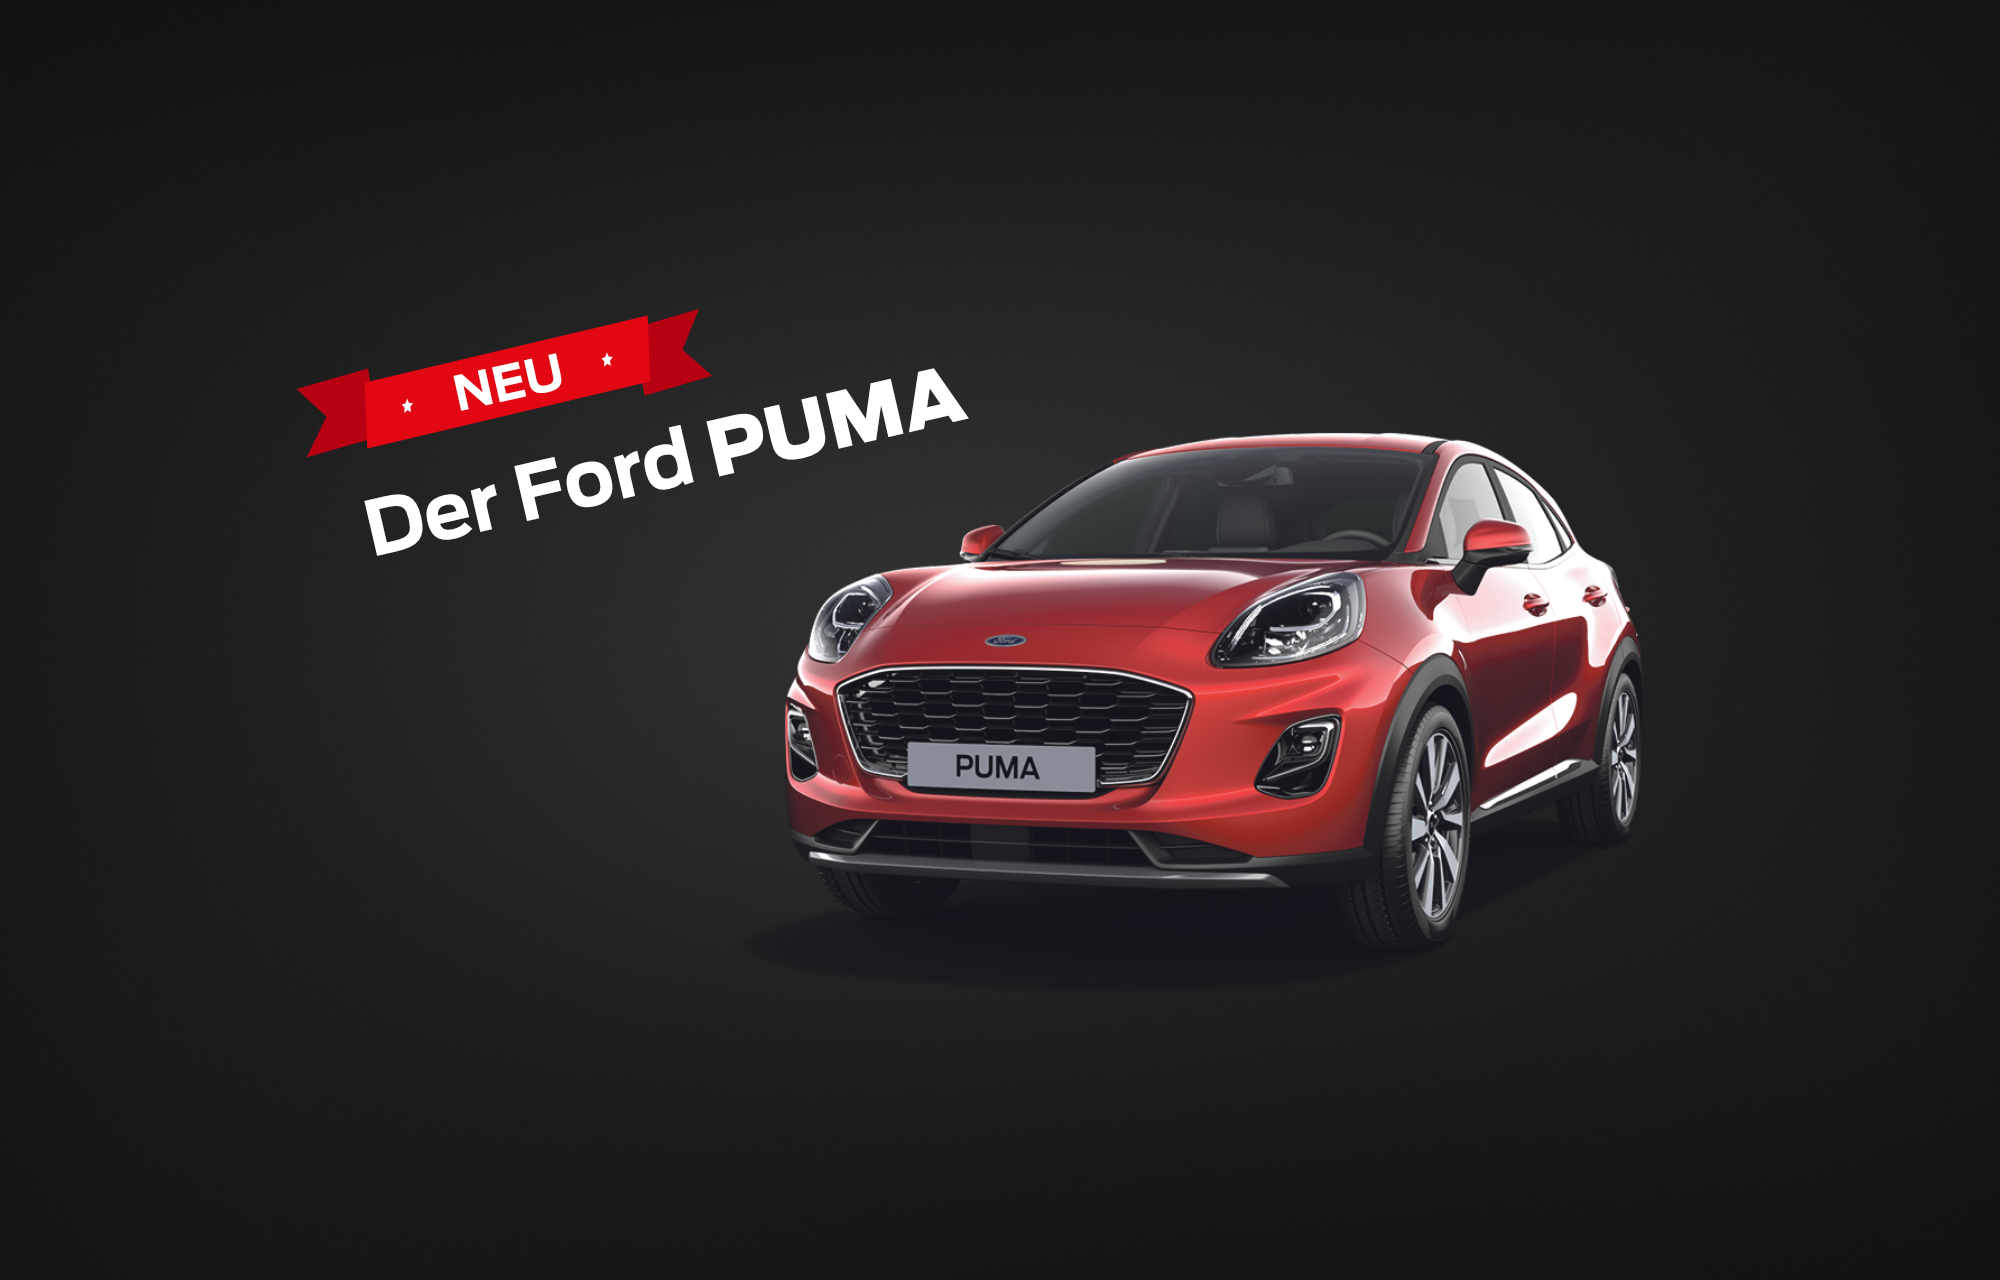 Der neue Ford Puma in der Sedel Garage in Luzern